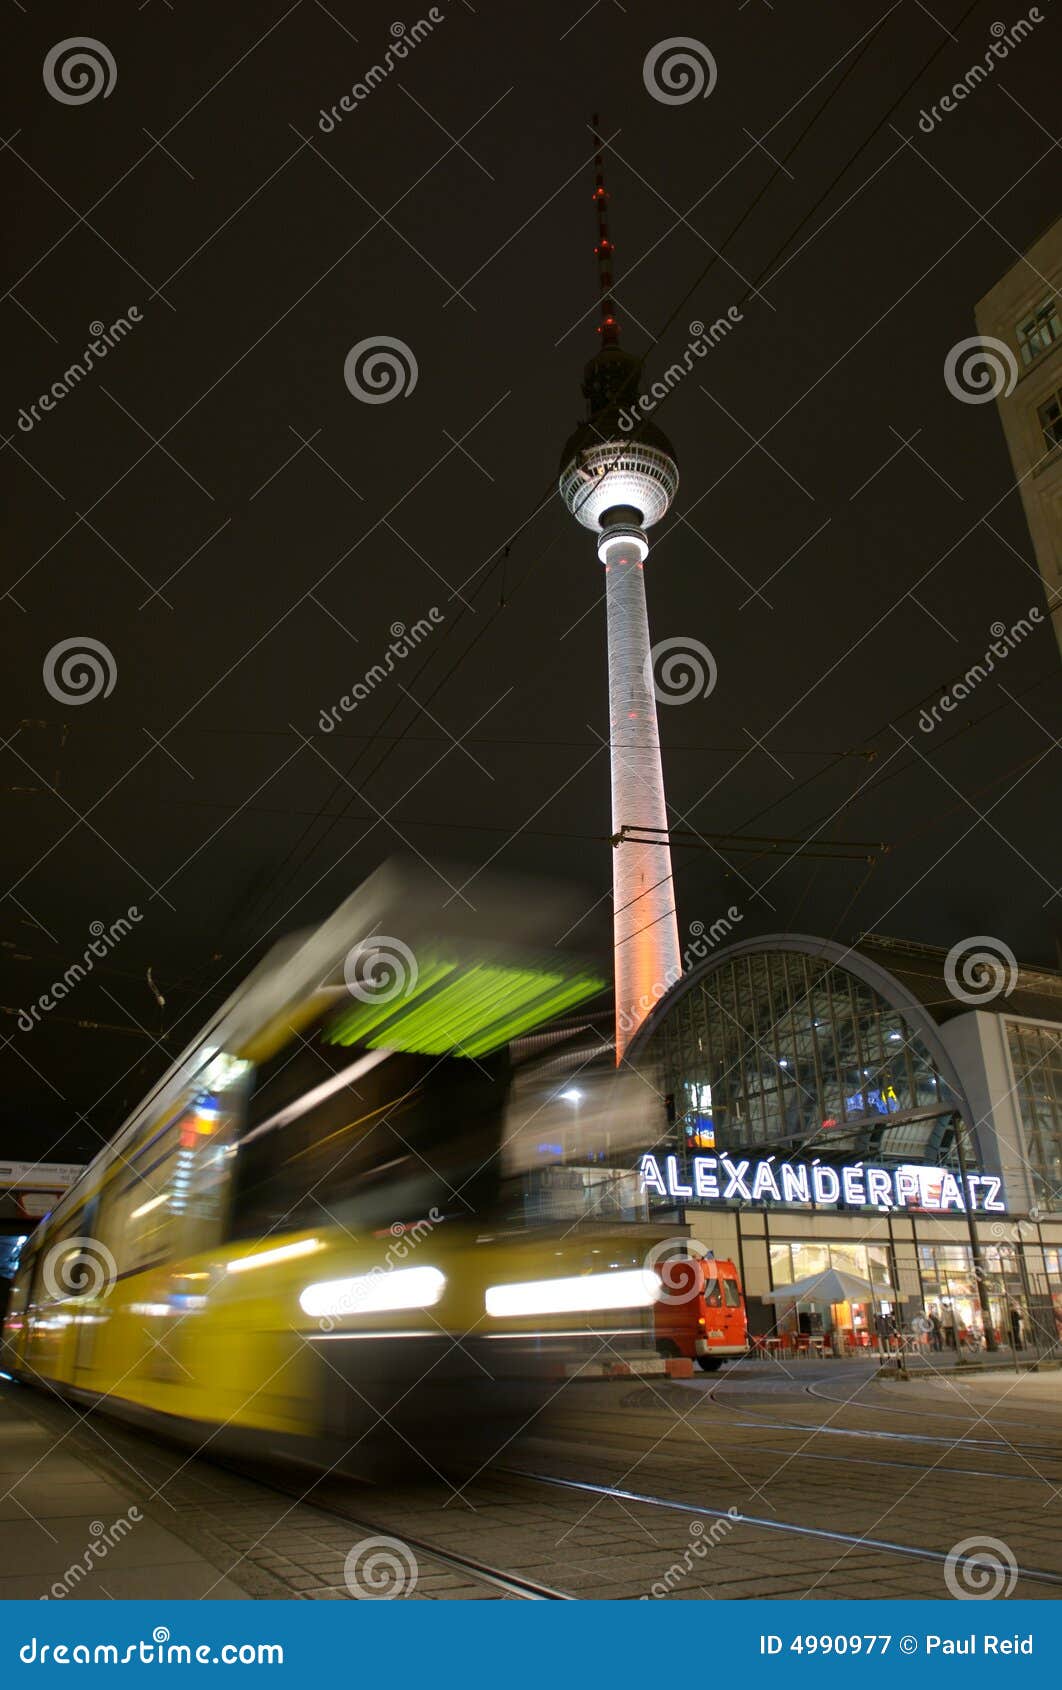 fernsehturm and tram at alexanderplatz